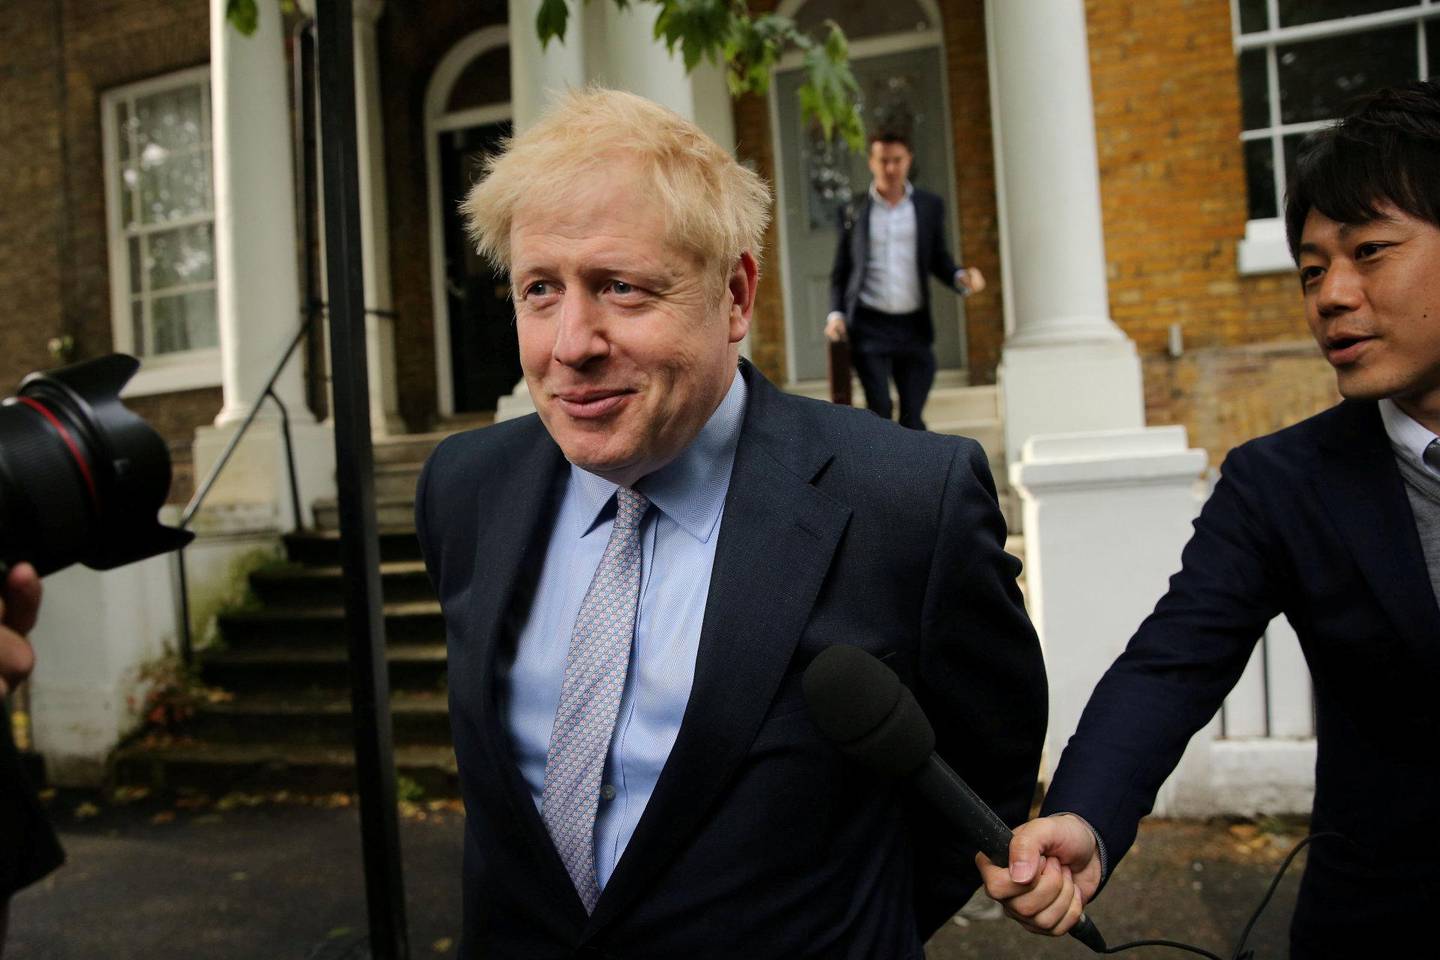 FAVORITTEN: Boris Johnson er fortsatt klar favoritt til å ta over etter Theresa May. Her utenfor hjemmet i London i går. FOTO: ISABEL INFANTES/NTB SCANPIX